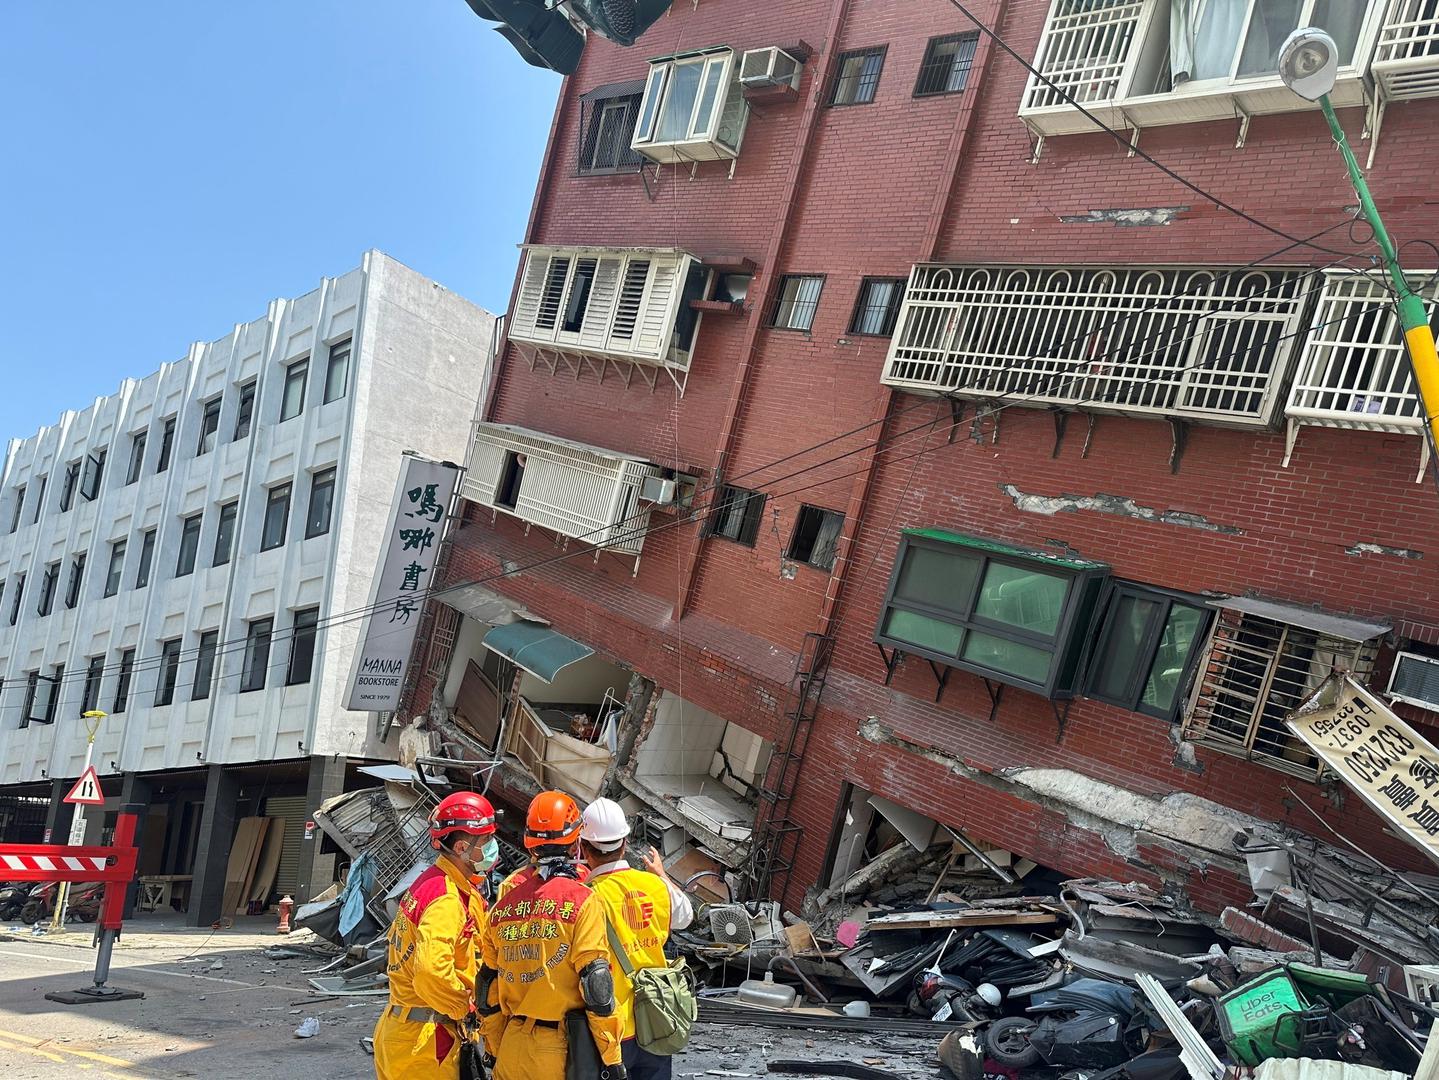 Potres, koji je izazvao prekid struje u glavnom gradu Taipeiju, dogodio se u 7 sati i 58 minuta po lokalnom vremenu na dubini od 15.5 km kod južne obale Tajvana, izvijestila je državna seizmološka služba.